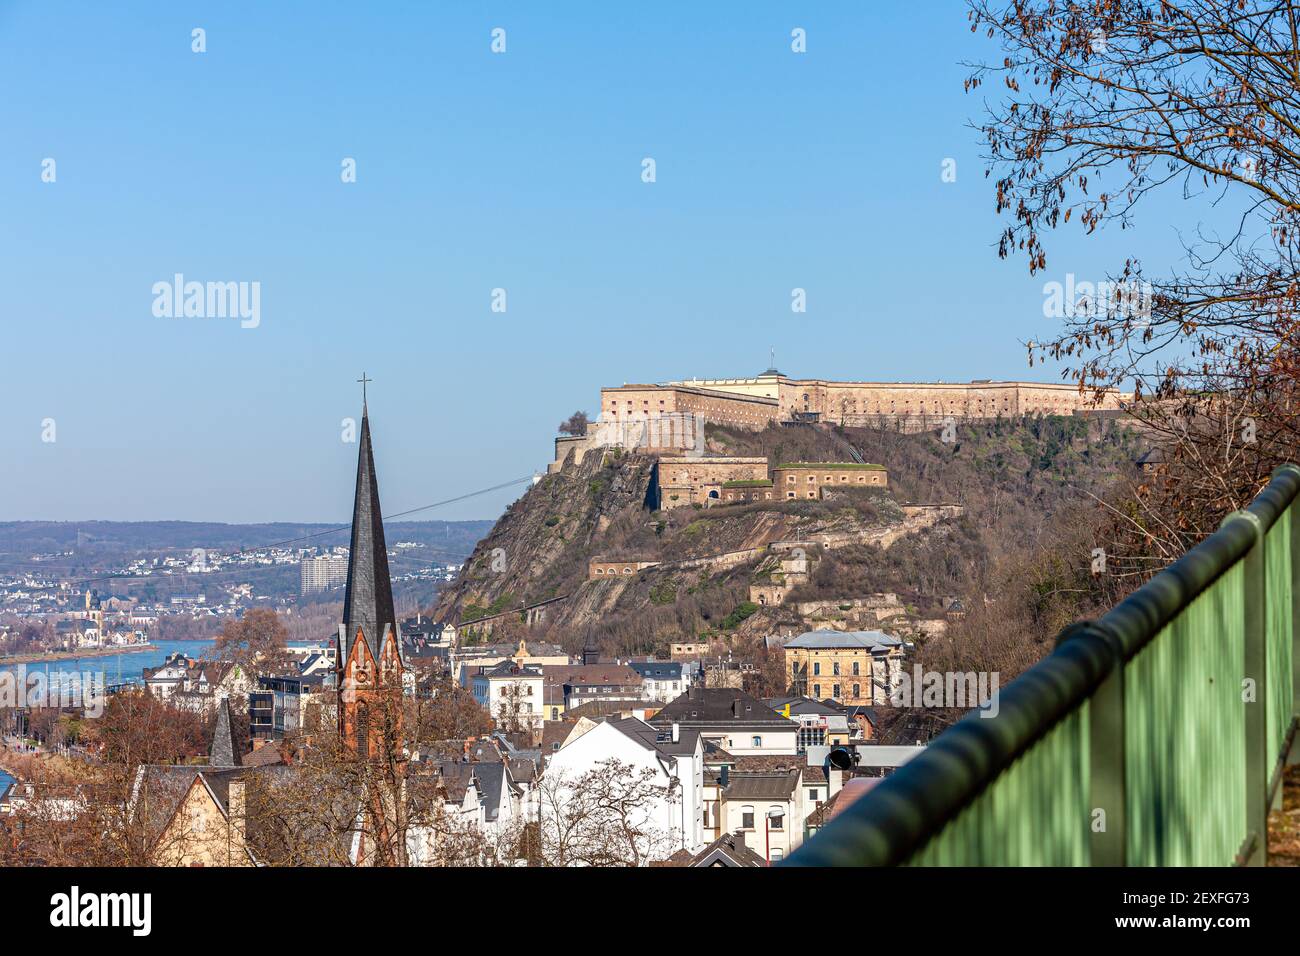 'Ehrenbreitstein' fortress, Koblenz, Germany, Europe Stock Photo